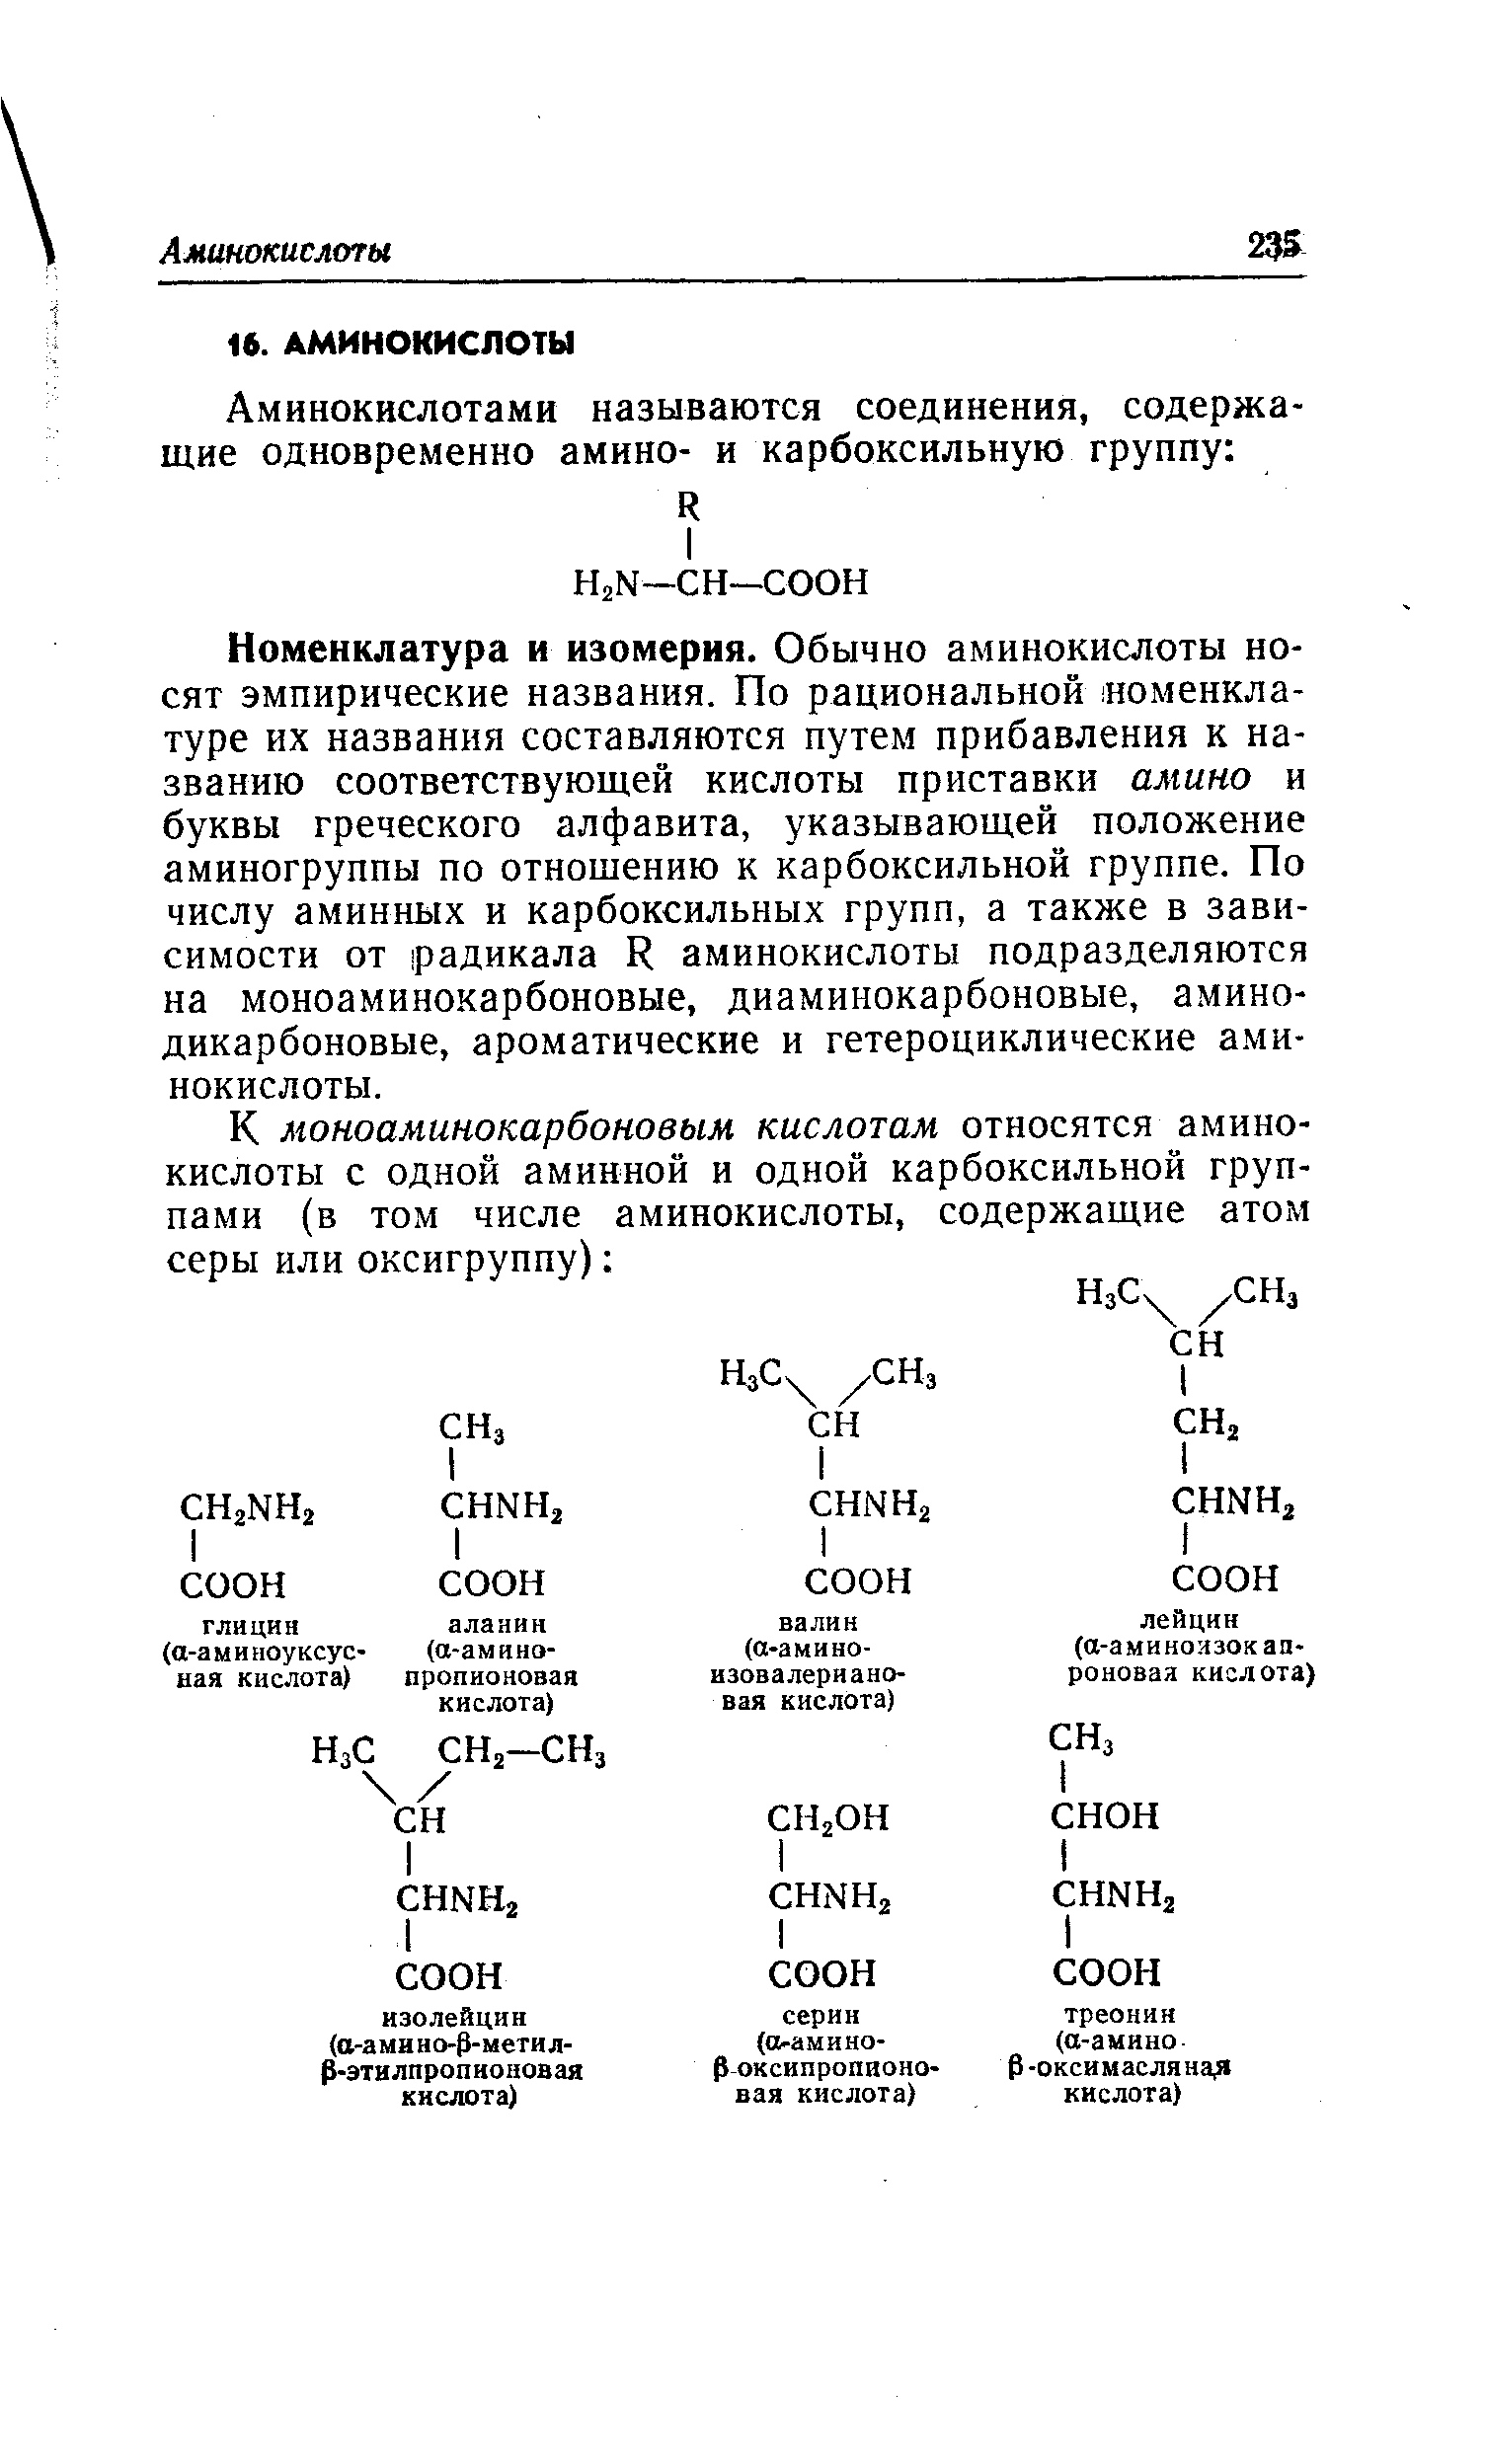 Номенклатура и изомерия. Обычно аминокислоты носят эмпирические названия. По рациональной номенклатуре их названия составляются путем прибавления к названию соответствующей кислоты приставки амино и буквы греческого алфавита, указывающей положение аминогруппы по отношению к карбоксильной группе. По числу аминных и карбоксильных групп, а также в зависимости от радикала К аминокислоты подразделяются на моноаминокарбоновые, диаминокарбоновые, амино-дикарбоновые, ароматические и гетероциклические а.ми-нокислоты.